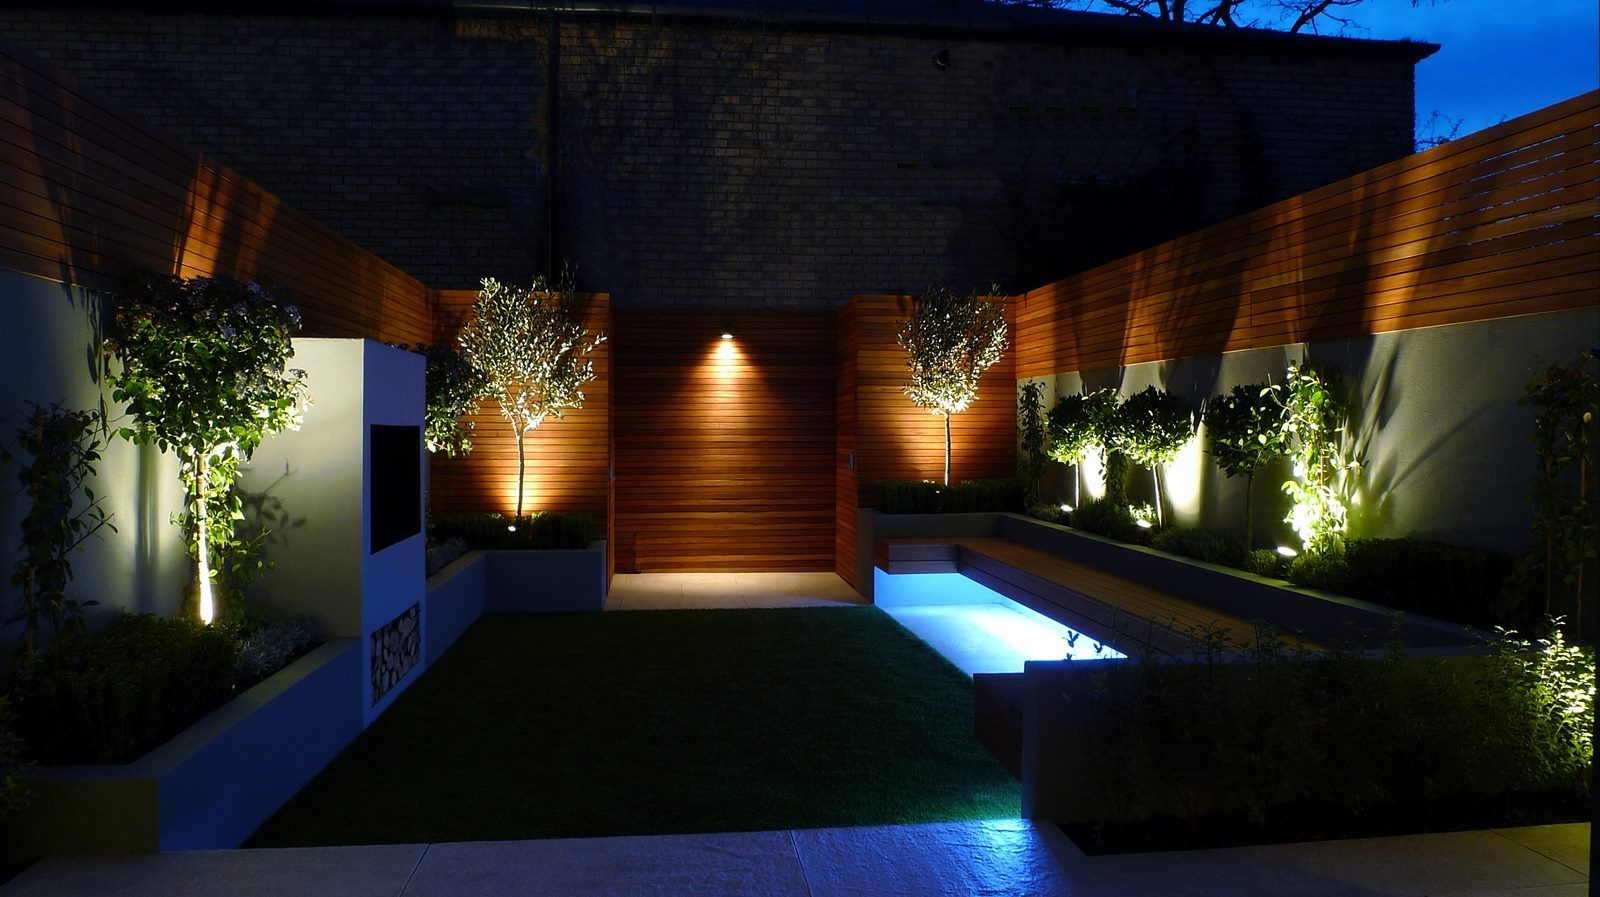 Jardines Nocturnos, Akasha espacios iluminados Akasha espacios iluminados Classic style gardens